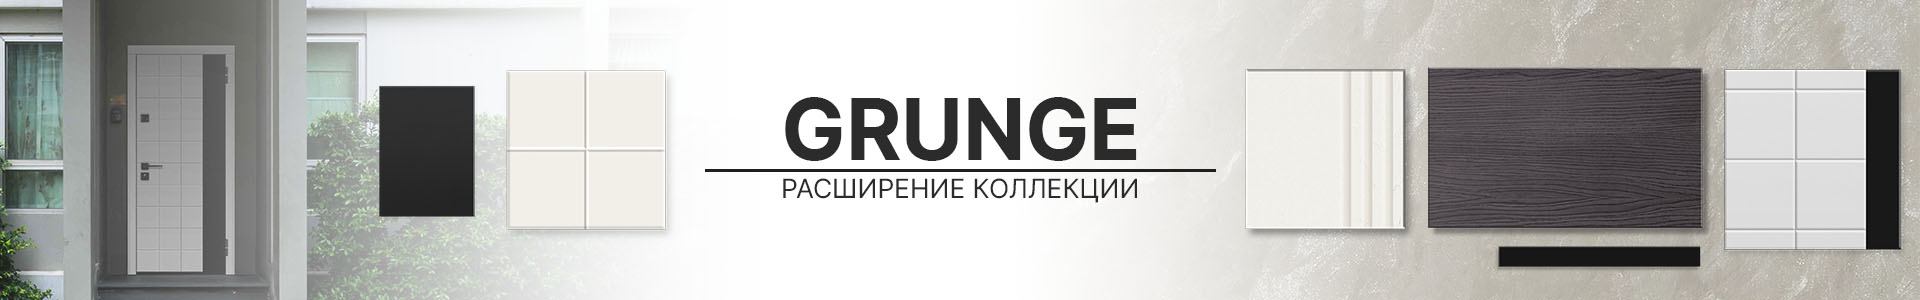 Коллекция Grunge: интерьер с нотами свободы